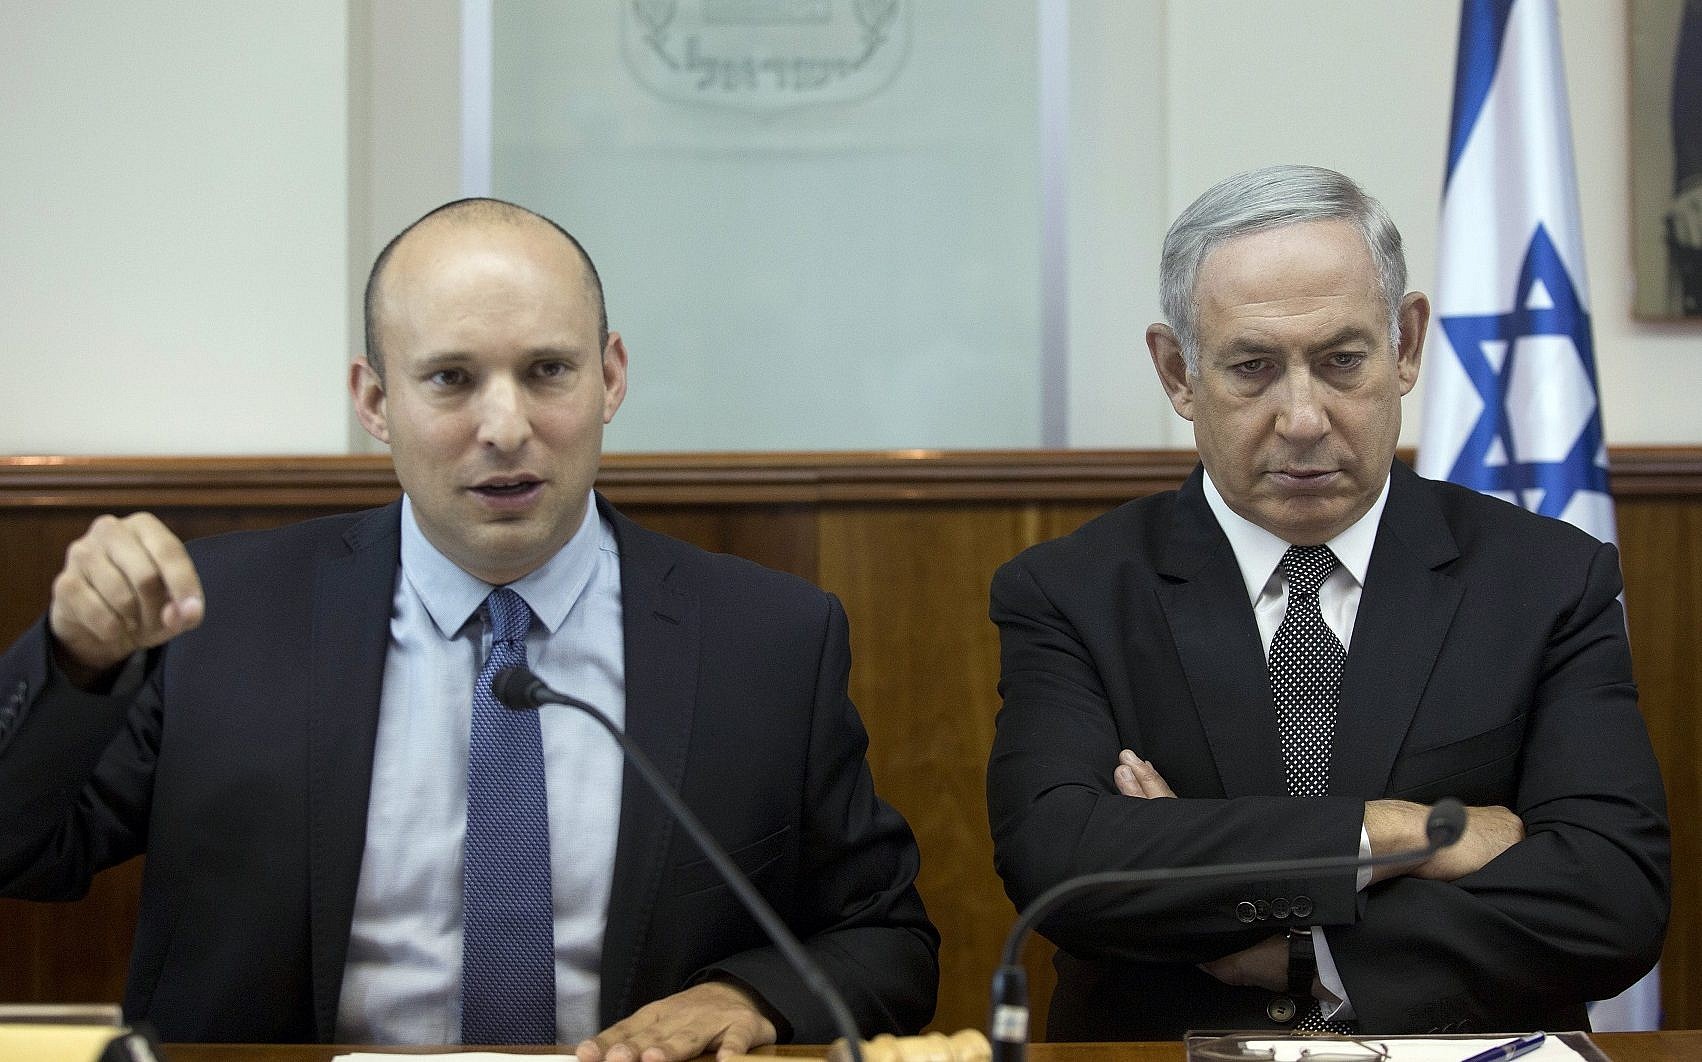 Netanyahu avrebbe minacciato l’attuale premier israeliano Naftali Bennett per evitare la sua successione